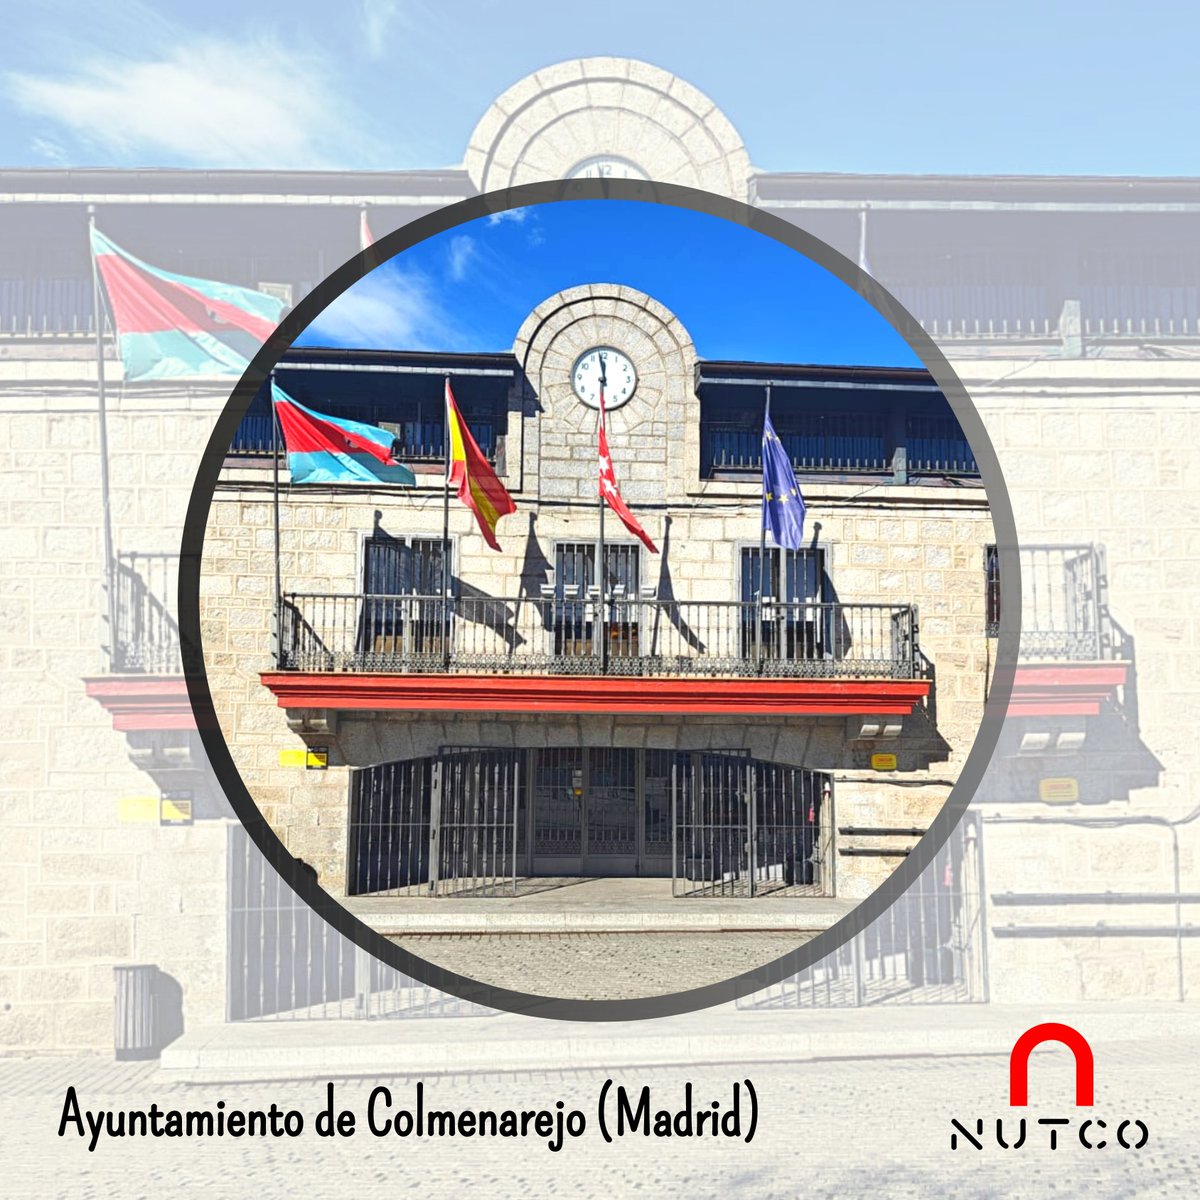 🗣 Ayer, en el Ayuntamiento de Colmenarejo, el equipo de NUTCO ha tenido una mesa técnica con los responsables de proyecto de la RPT realizada en la administración, y con el objetivo de resolver dudas y revisar conjuntamente la documentación. 📩contacto@nutco.es #rpt #nutco